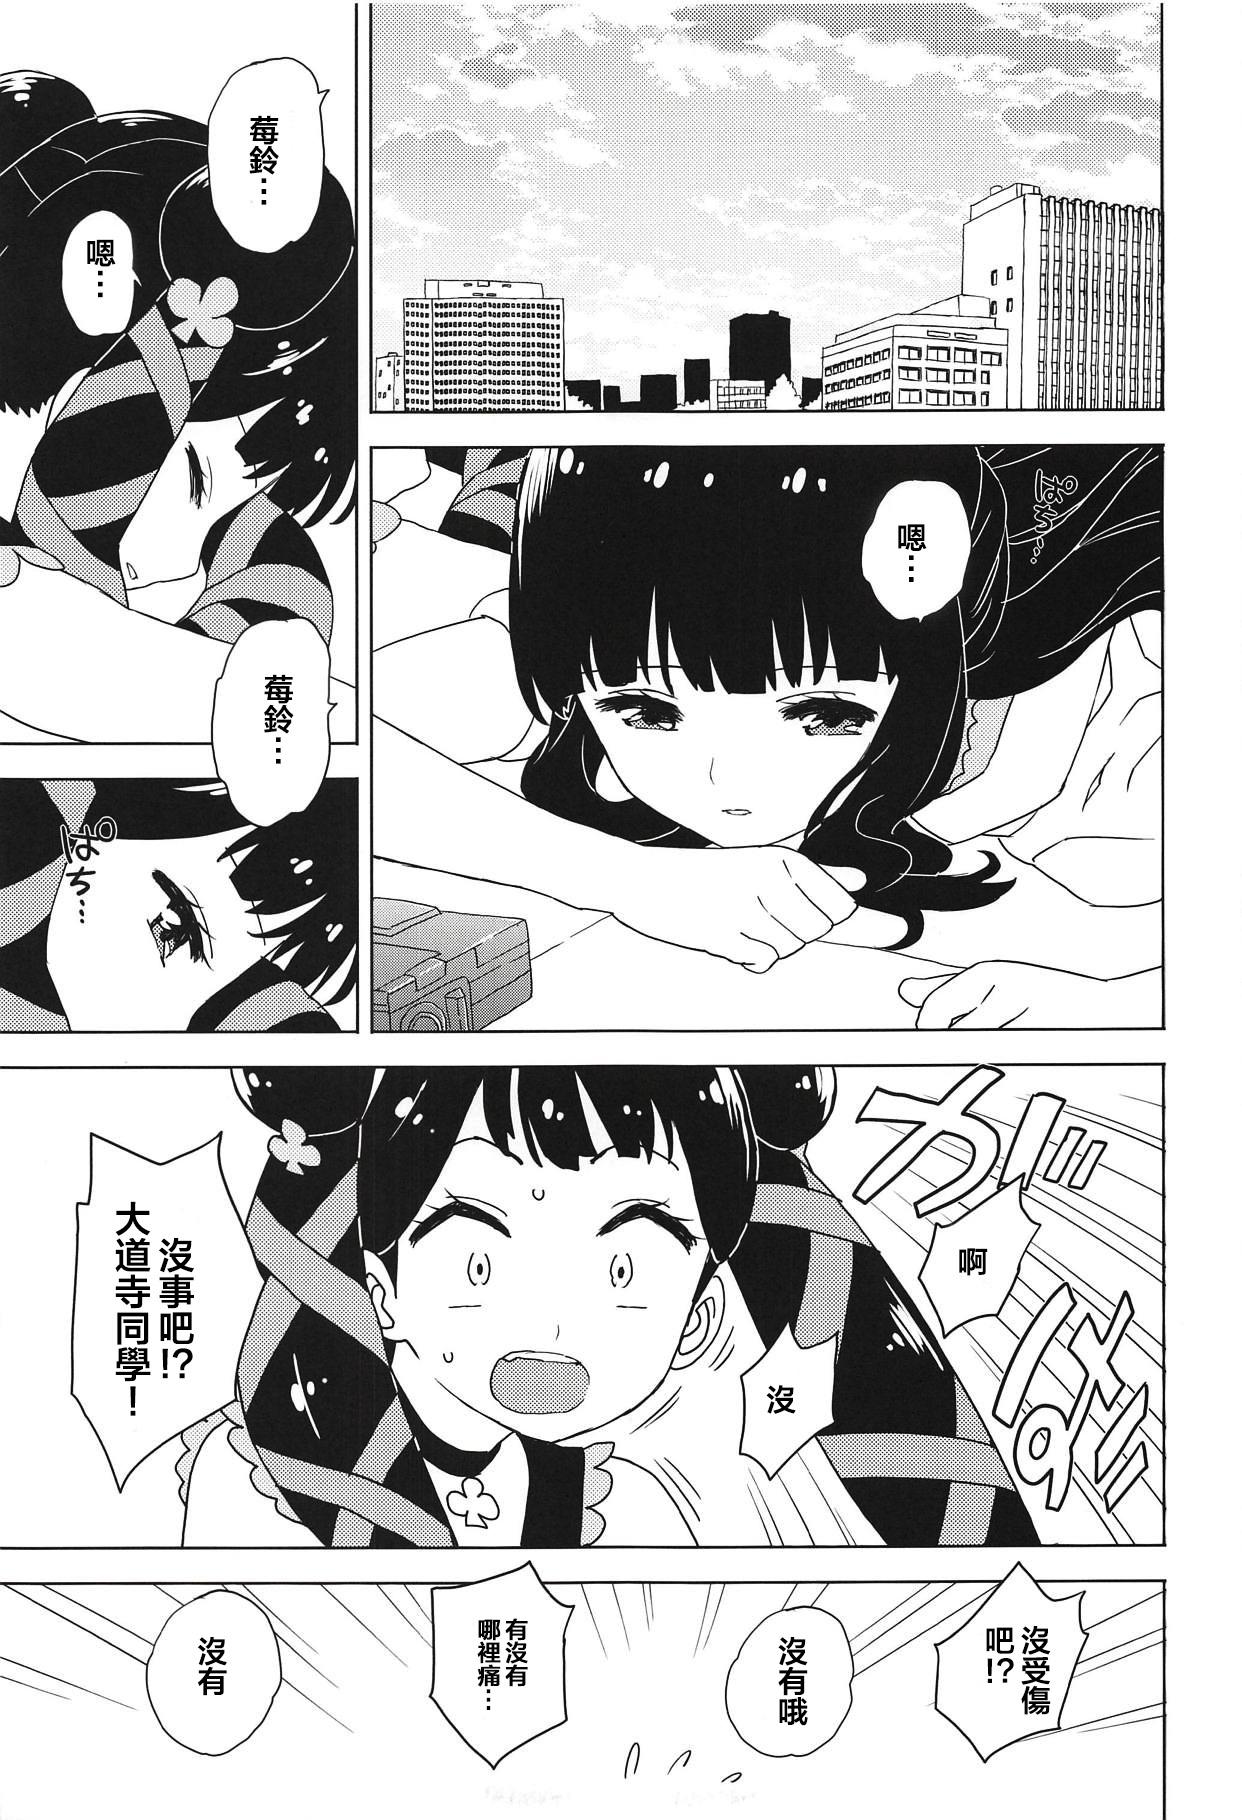 European Porn Geki 2 Gojitsu Banashi - Cardcaptor sakura Kissing - Page 7